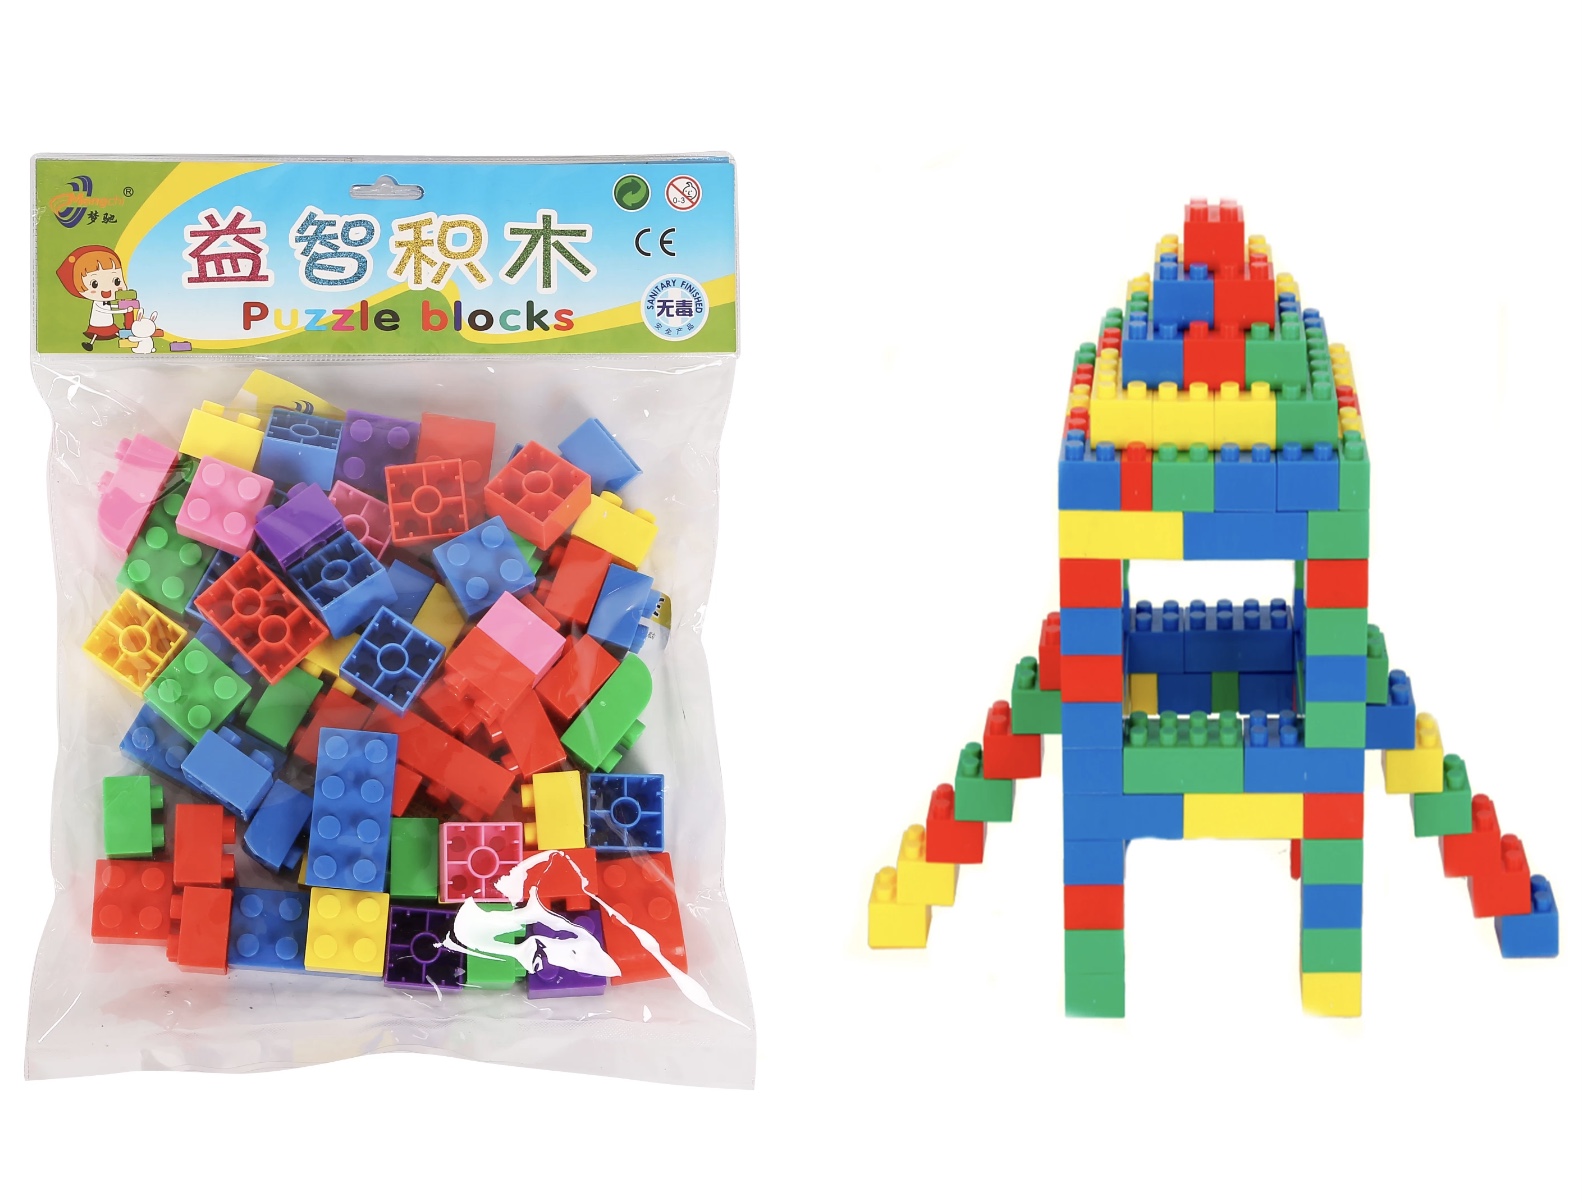 Set de construit din material plastic de tip cuburi care se pot îmbina în diverse forme se pot construi o mulțime de jocuri interactive pentru copilul dumneavoastră